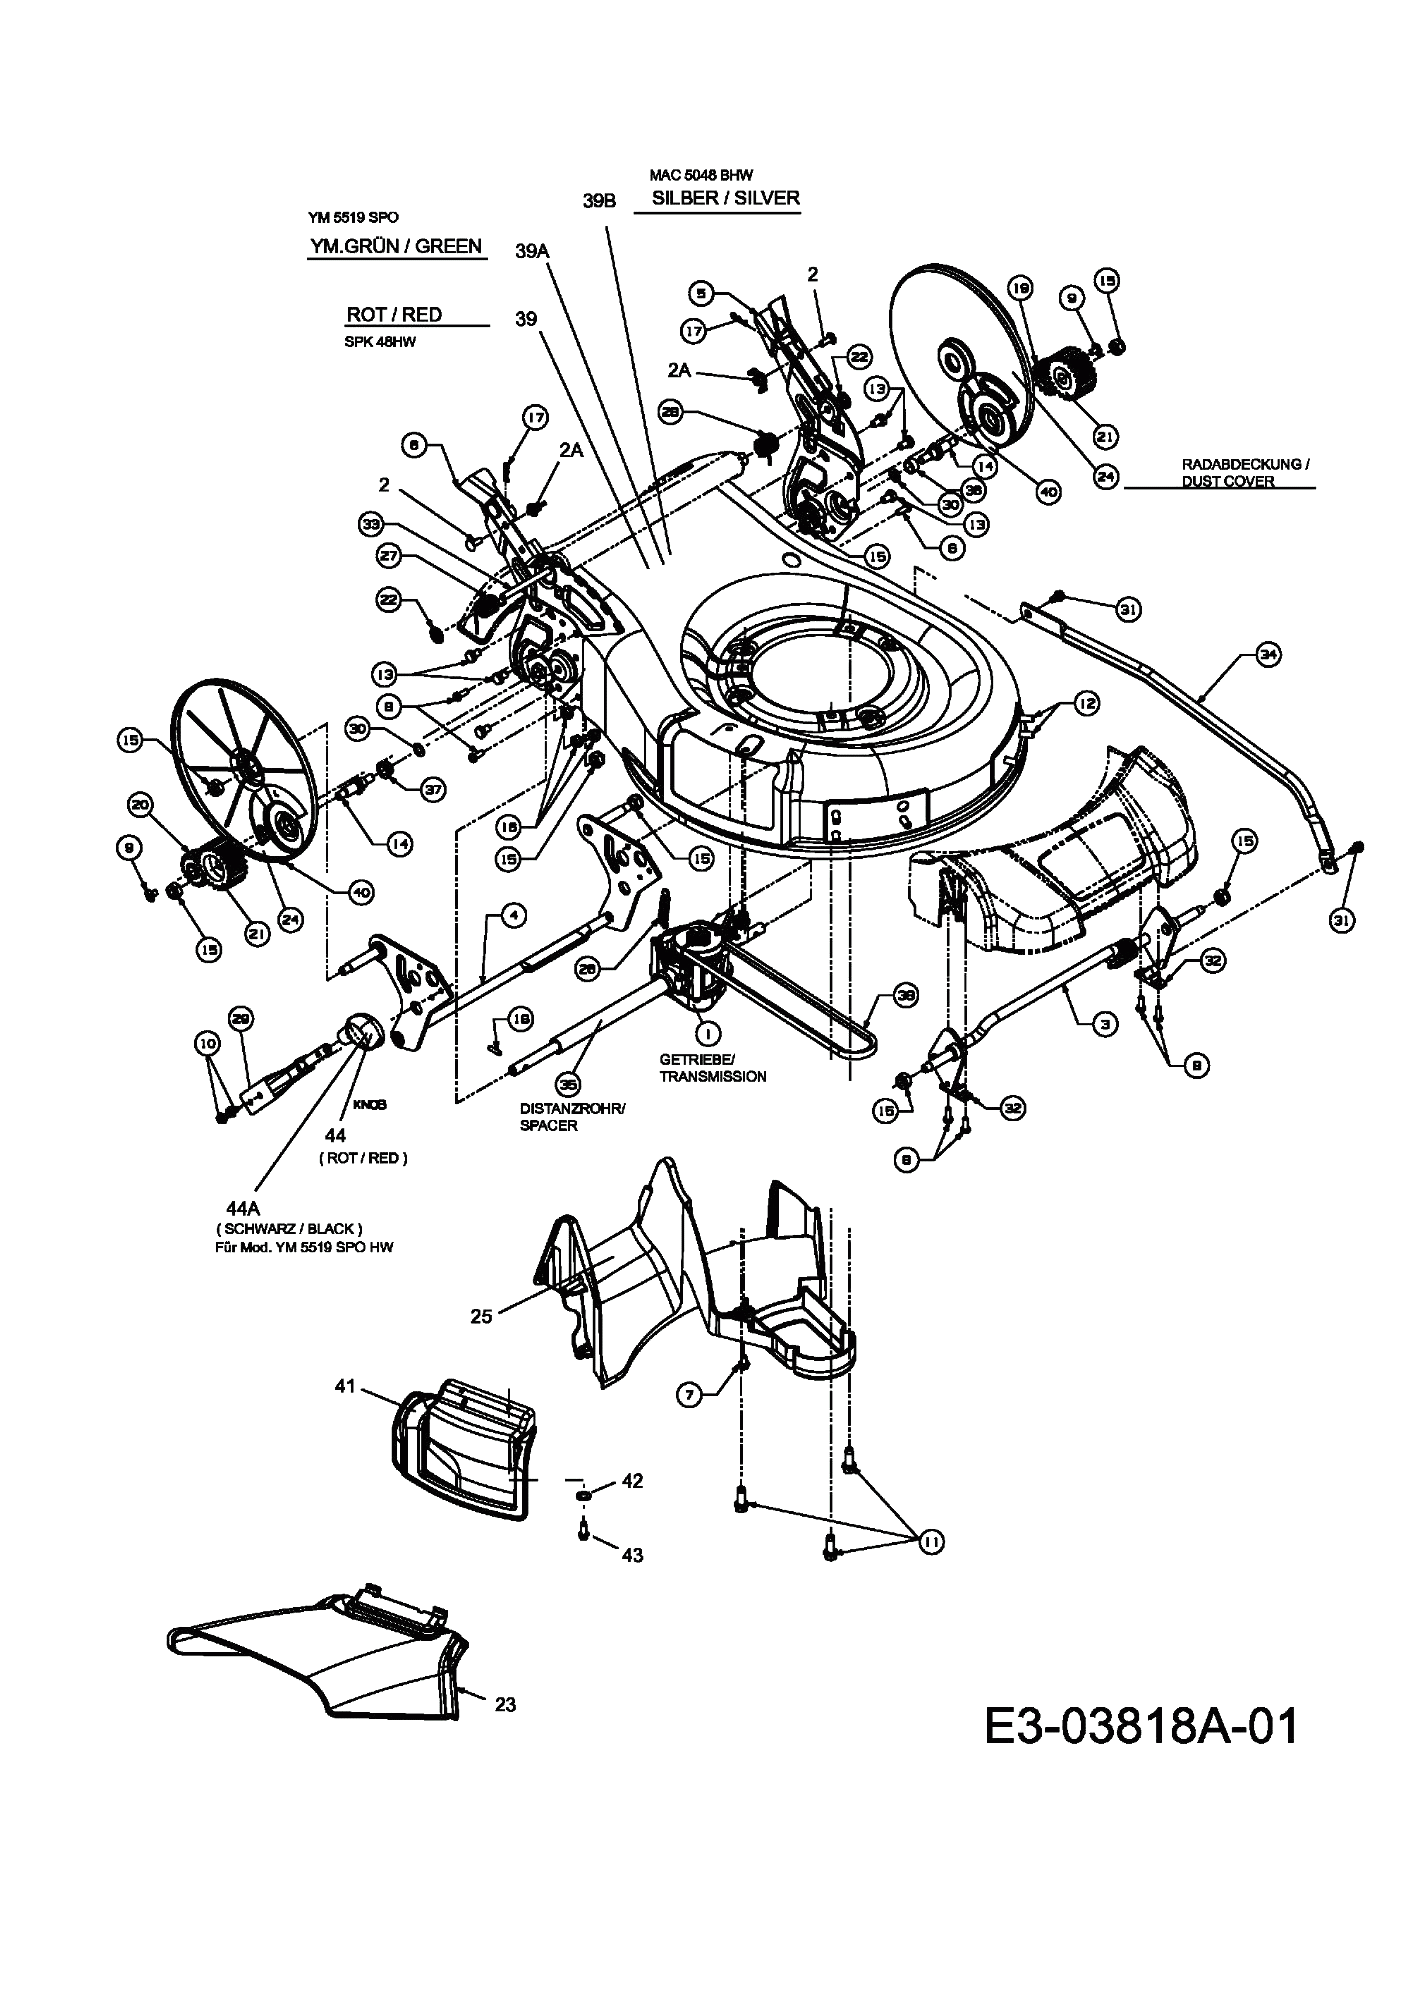 MTD Артикул 12A-127D678 (год выпуска 2009). Коробка передач, Задний дефлектор, Регулятор высоты среза